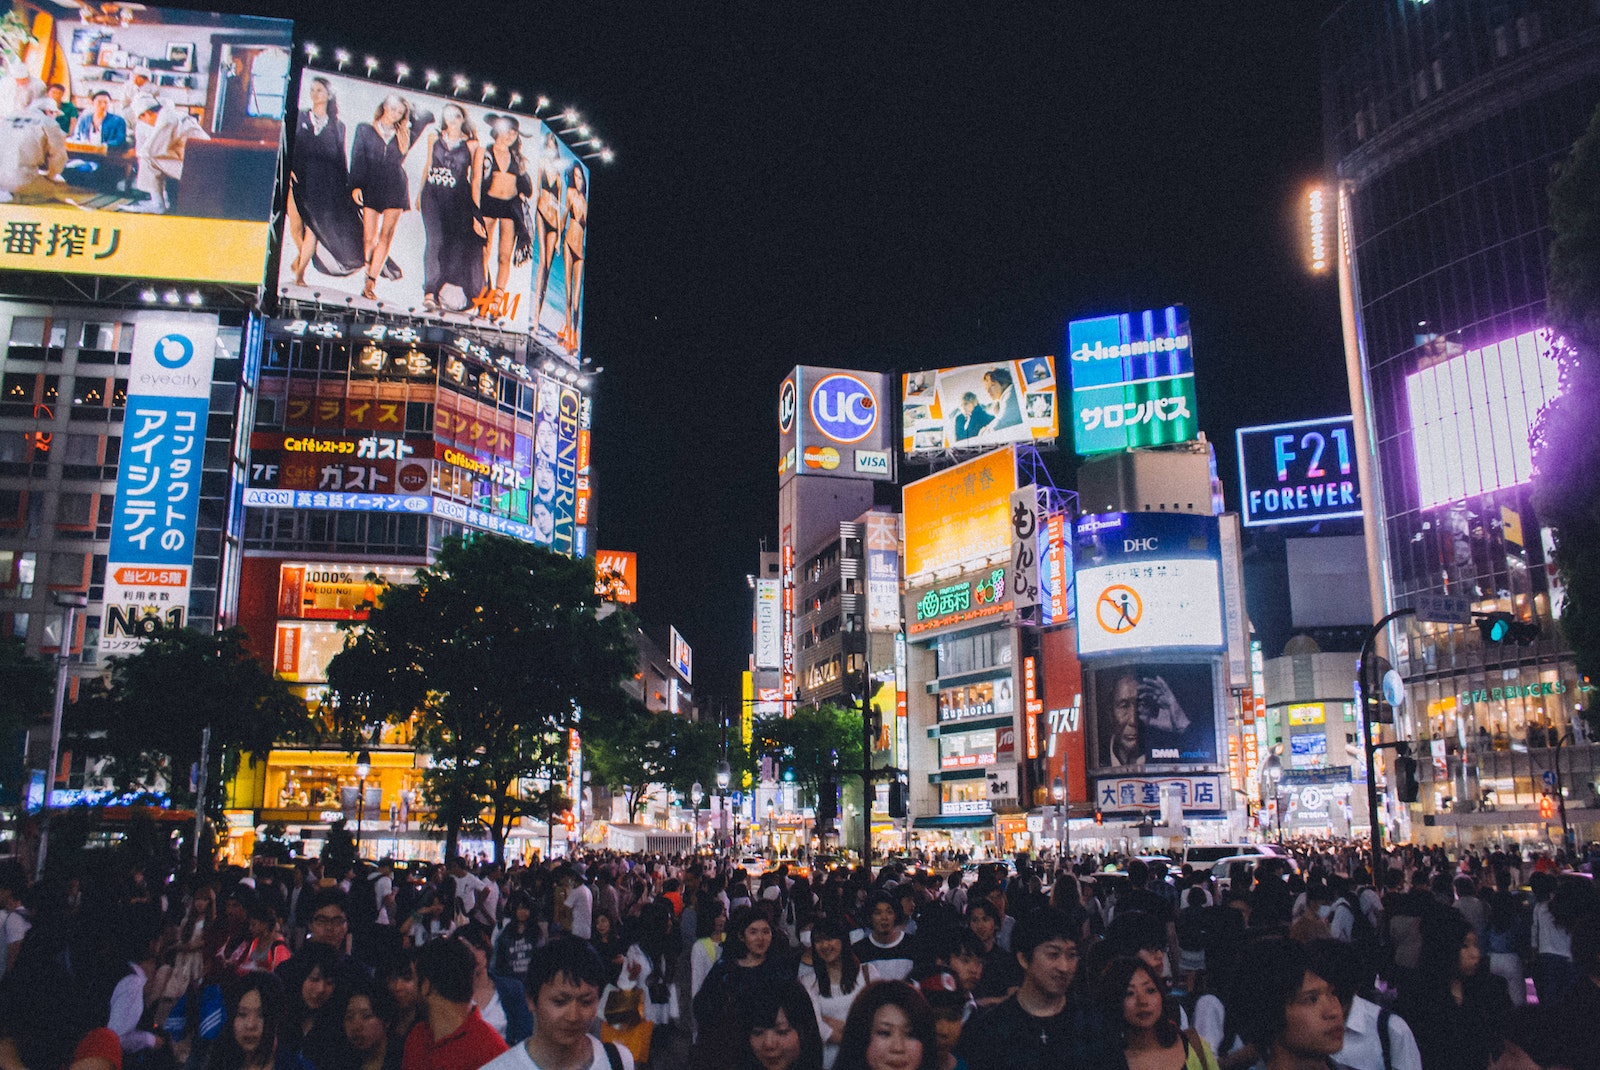 Vista notturna di Shibuya meta tipica dei viaggi in Giappone